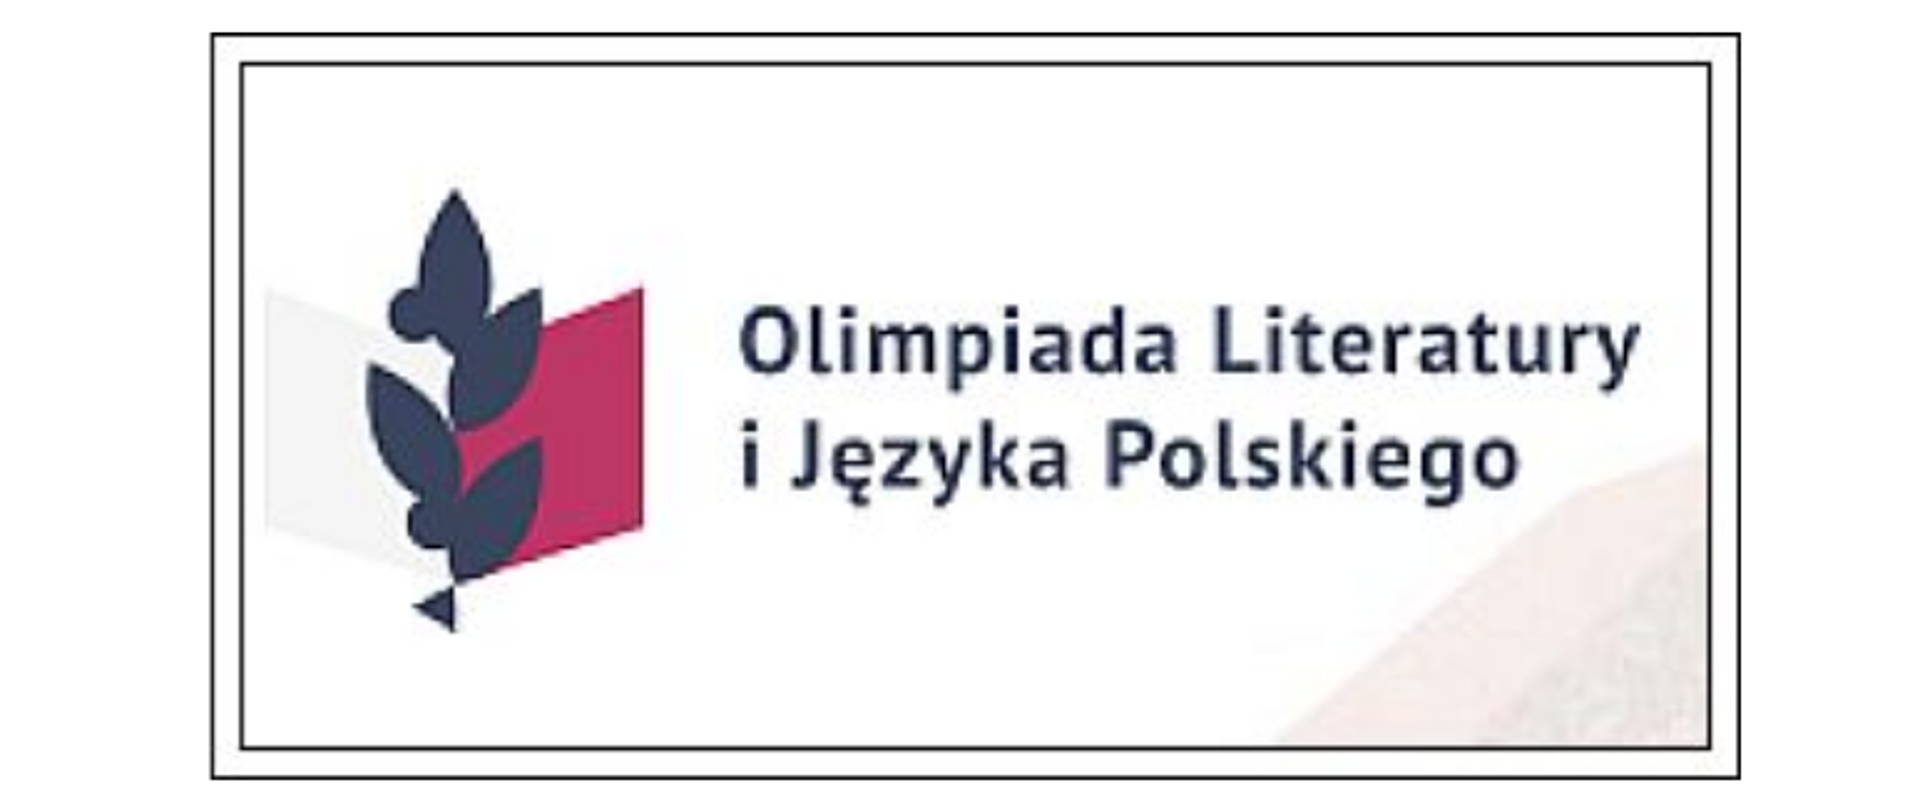 w lewej części logo składające się z dwóch połączonych równoległoboków w kolorze białym i czerwonym oraz kształtów liści, po prawej napis olimpiada literatury i języka polskiego